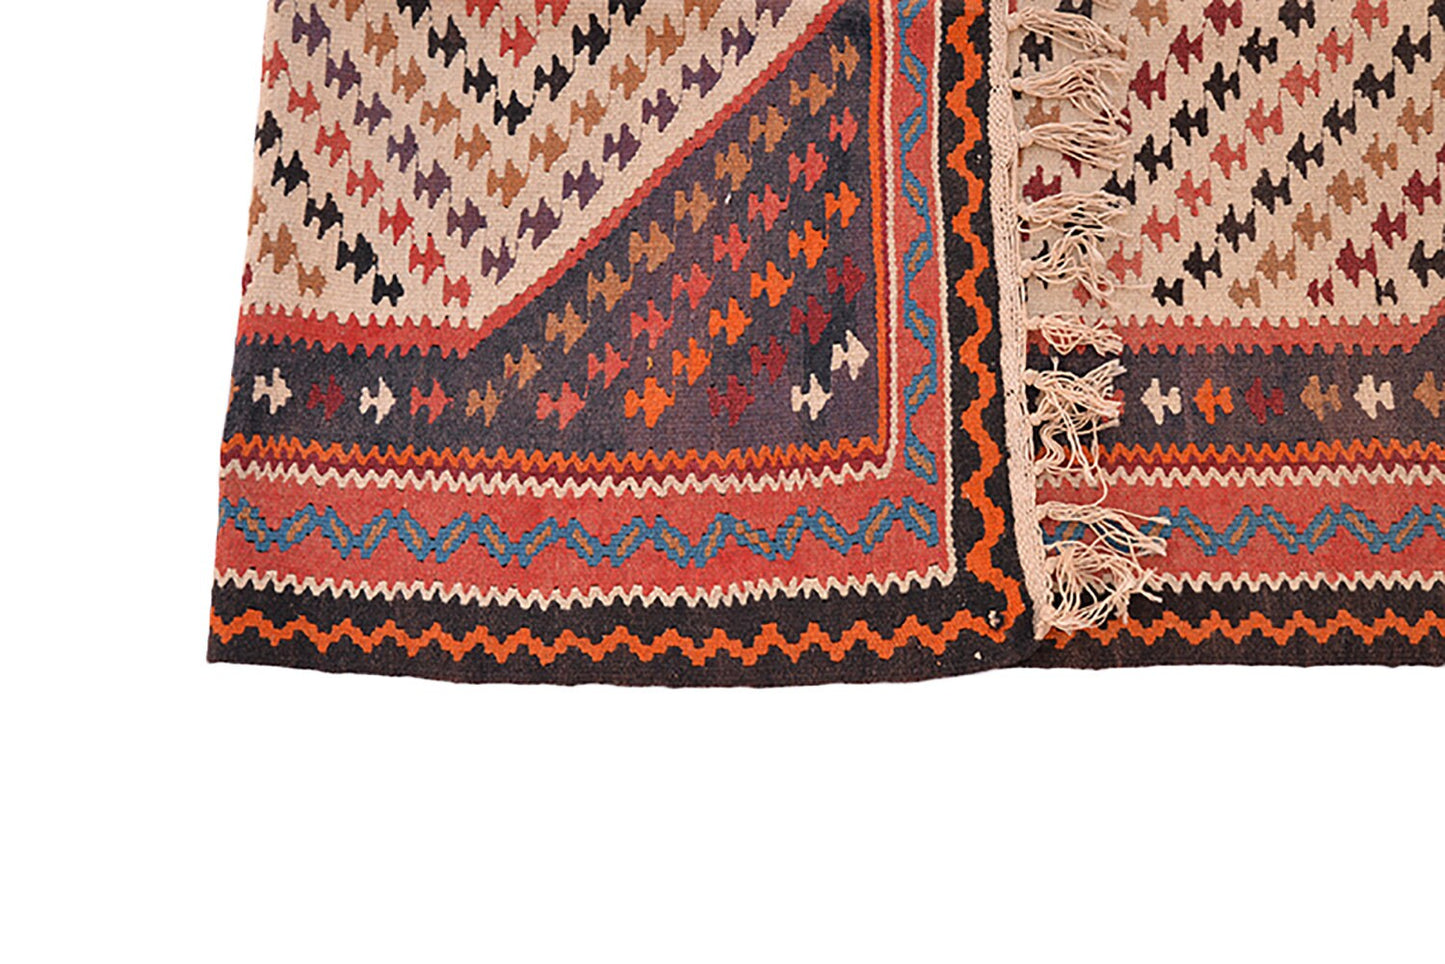 Vintage Turkish 3x6 Runner Rug | Chevron Design Red and Orange |  Wool Tribal Flatweave Rug